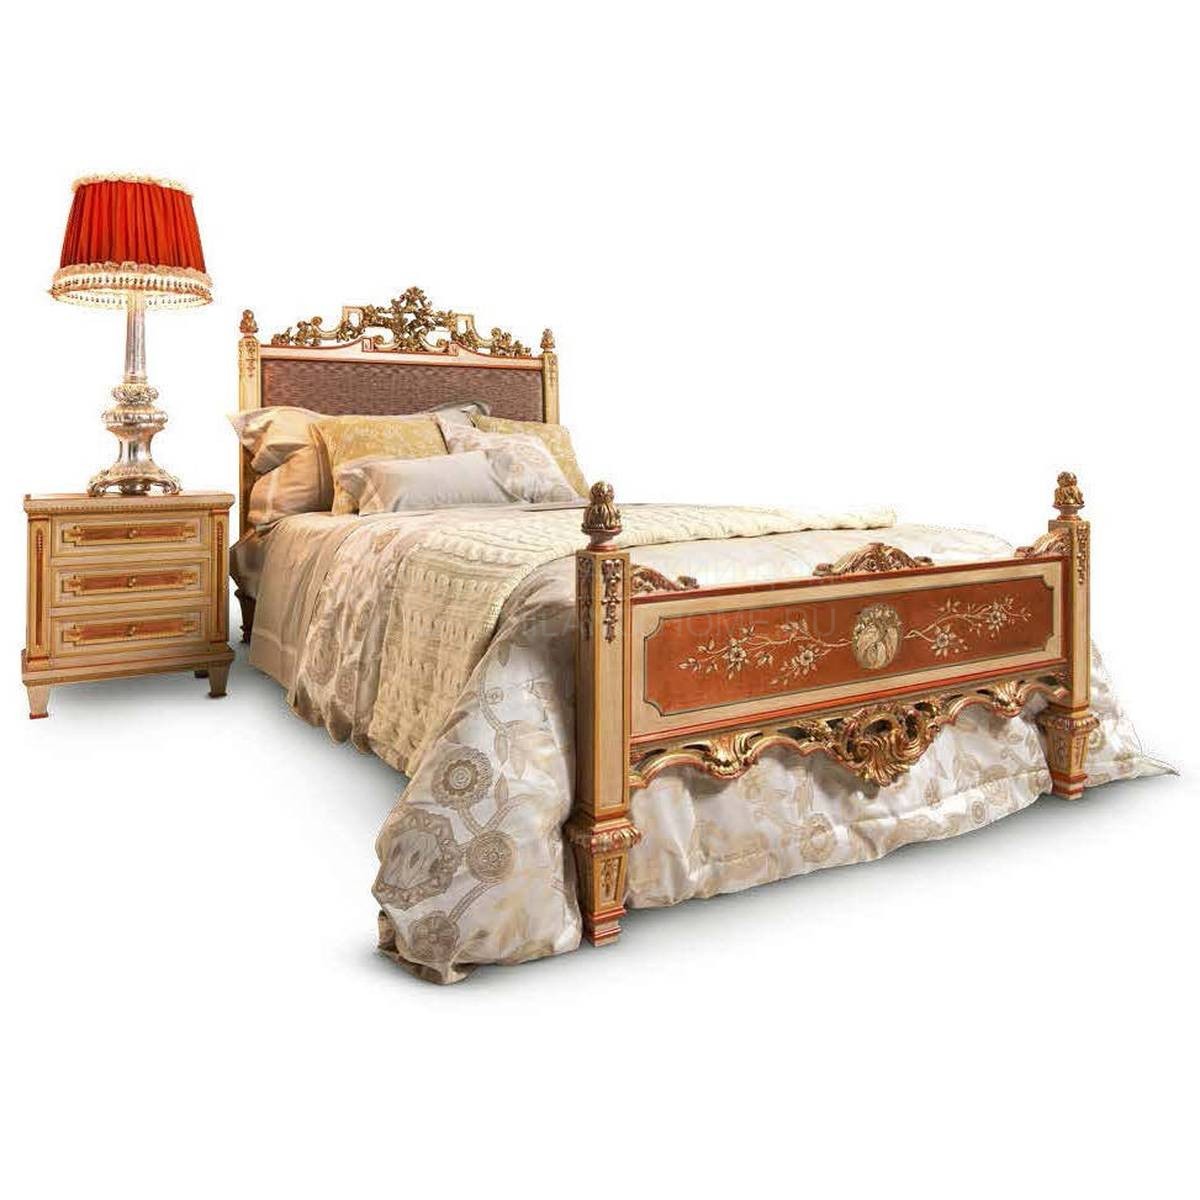 Односпальная кровать L2. 3201 Lucrezia/bed из Италии фабрики ASNAGHI INTERIORS